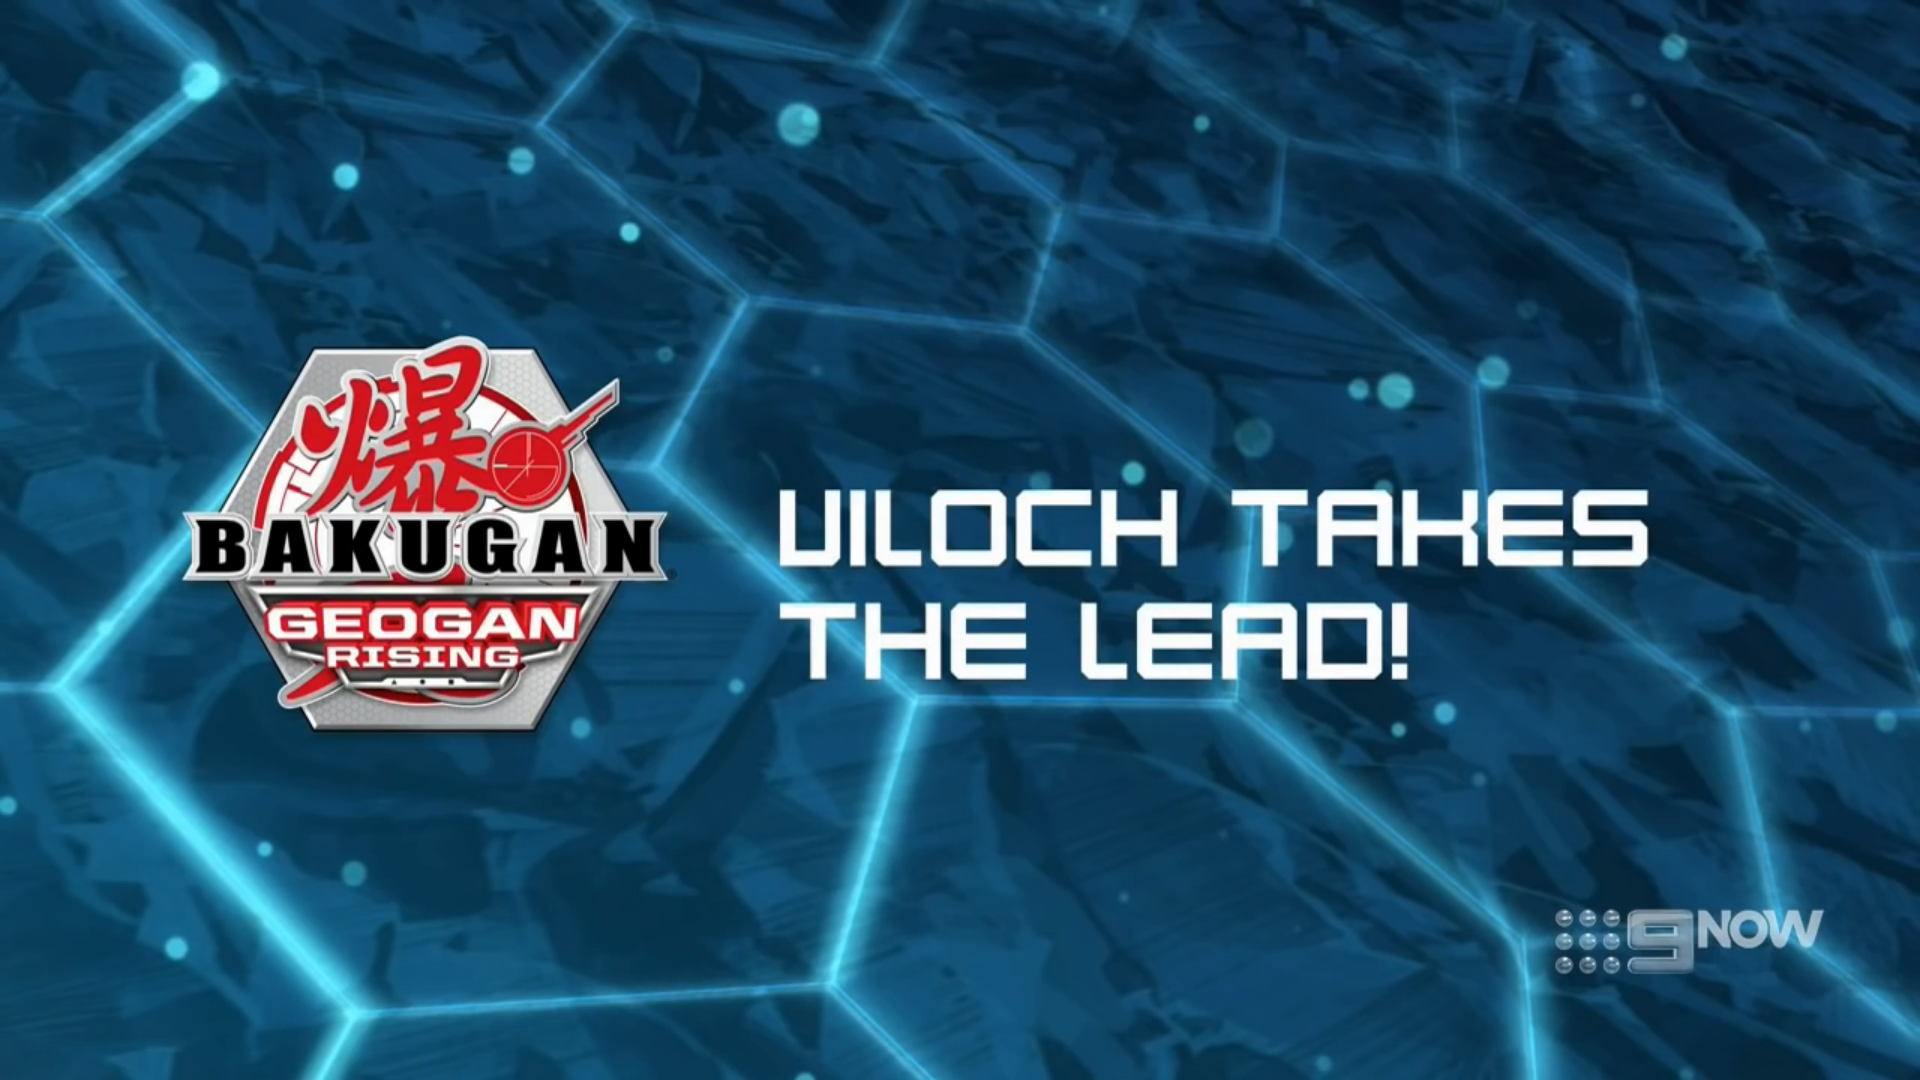 Bakugan Geogan Rising, Ultimate Viloch, 7-in-1 Exclusive Bakugan 